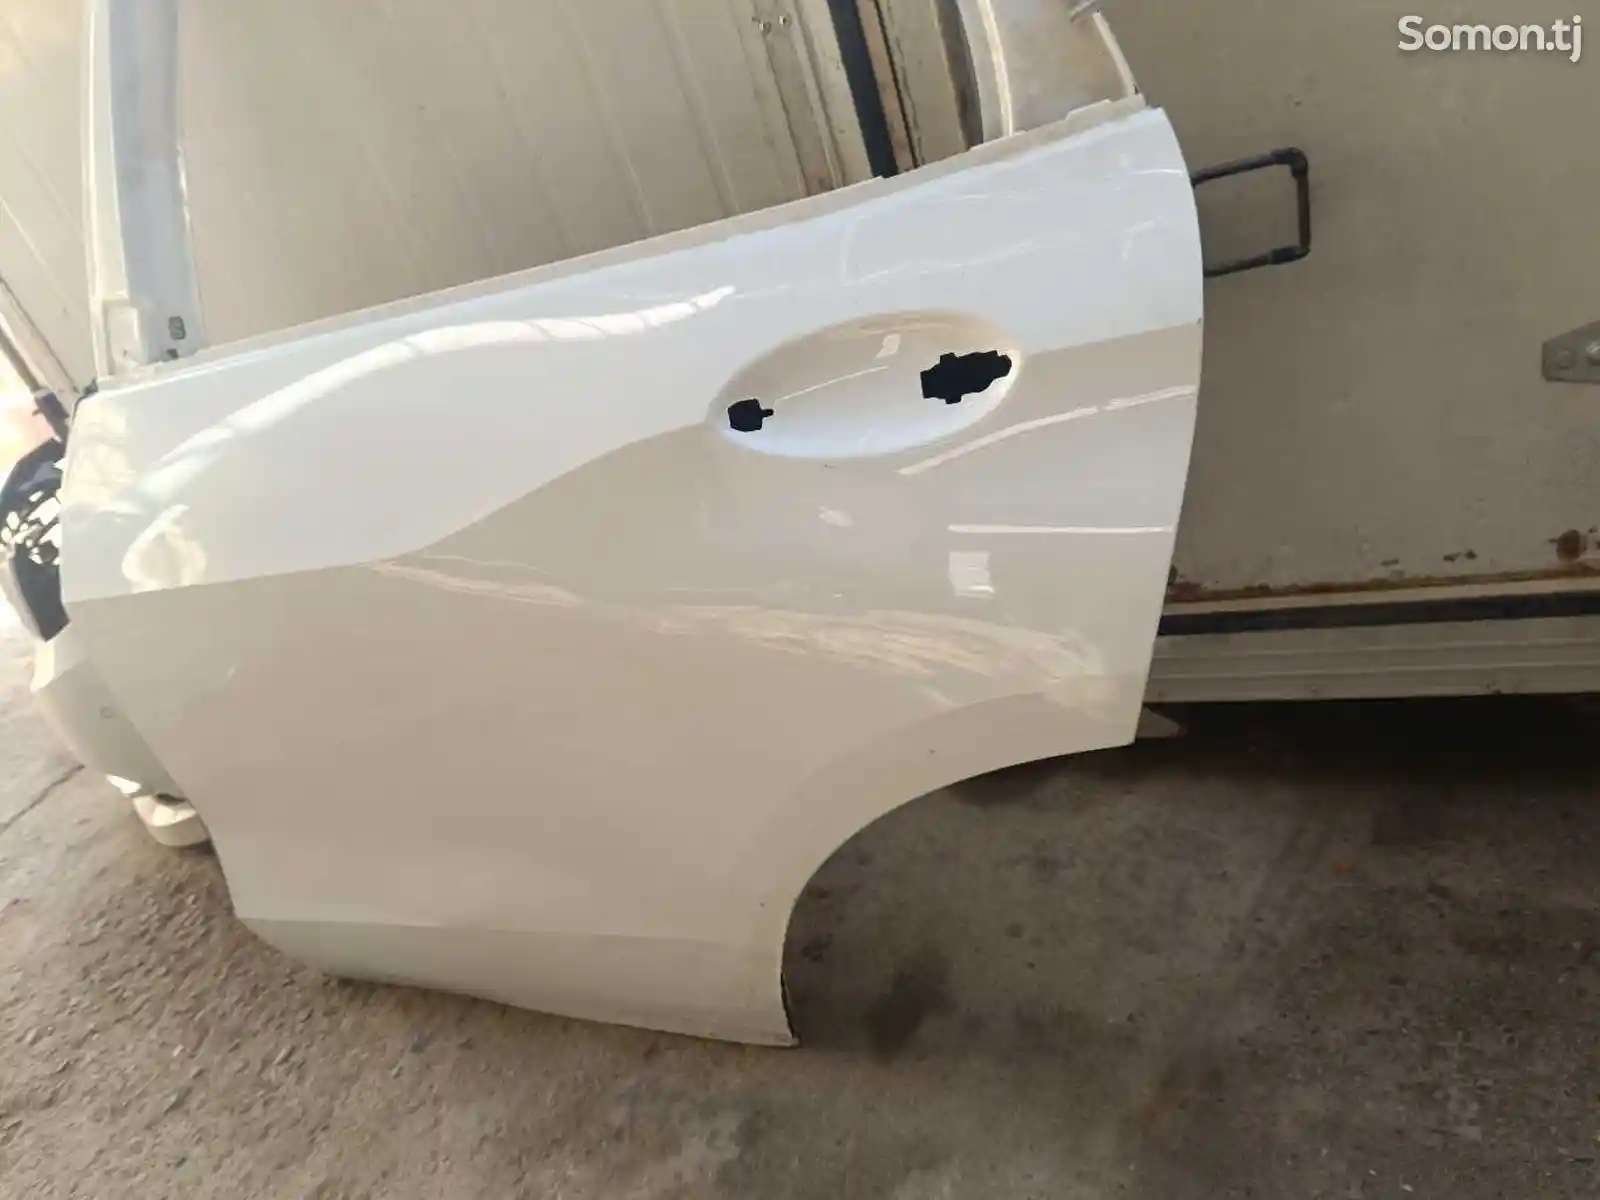 Задняя дверь от BMW X5, 2019-2